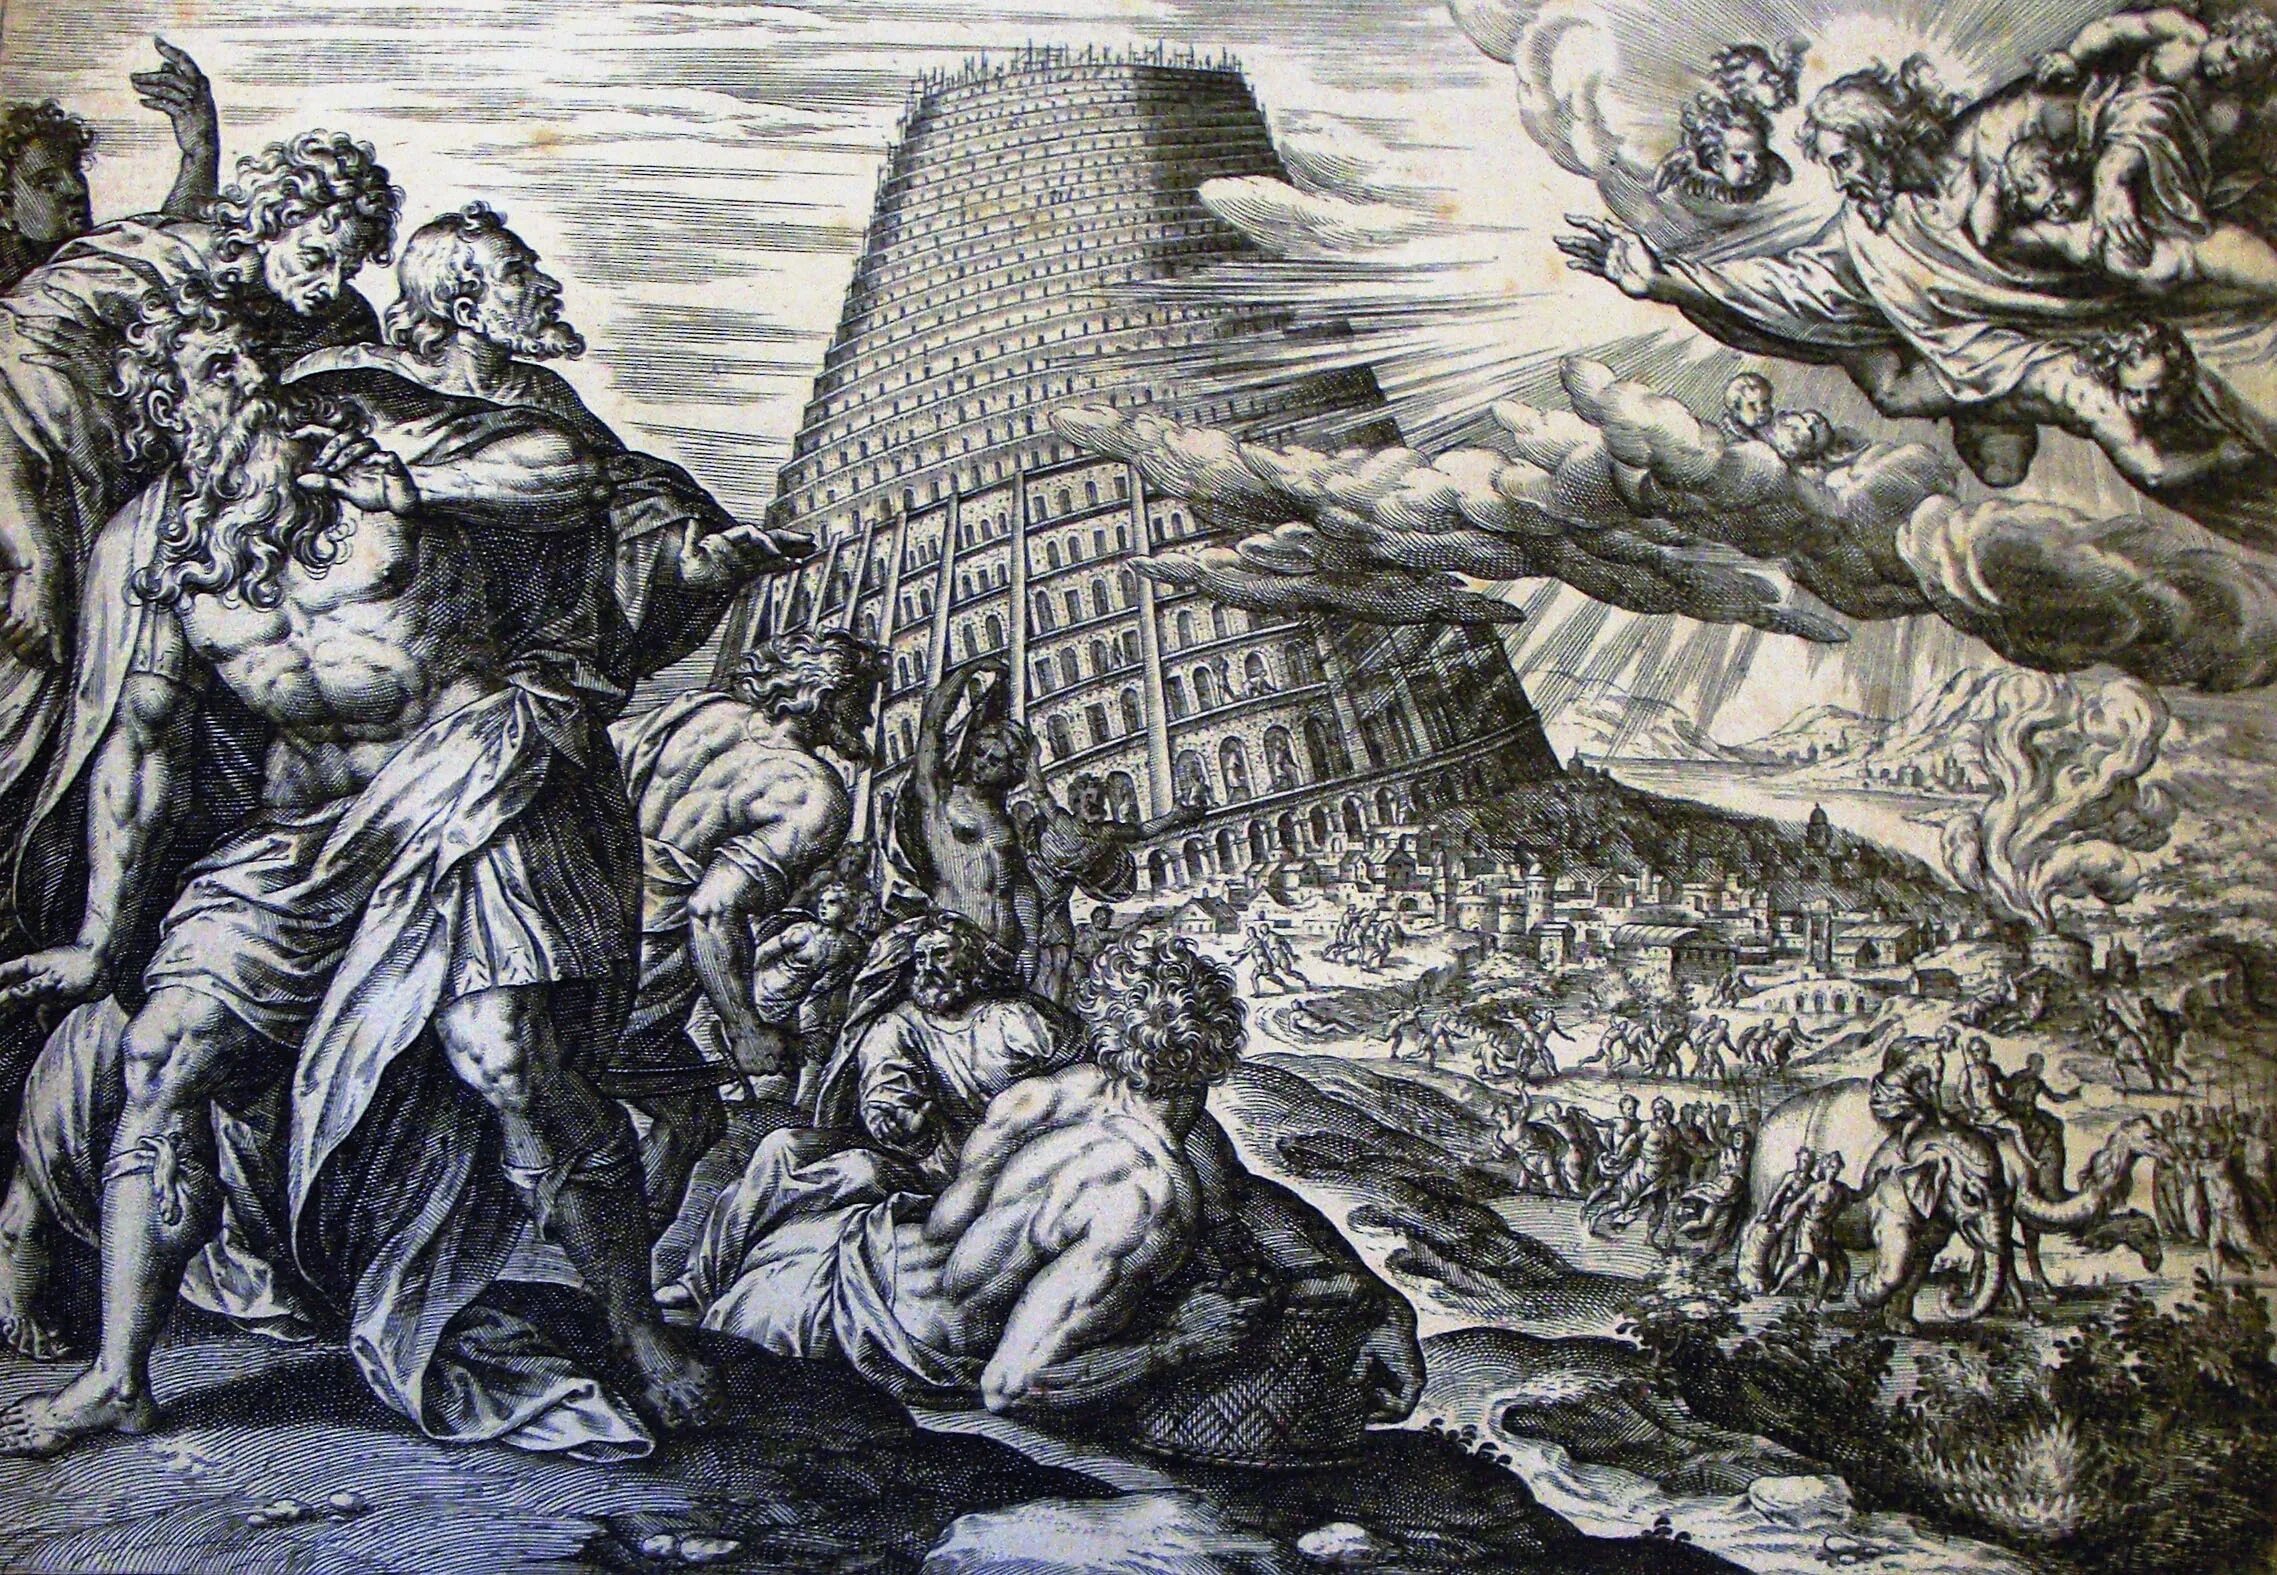 Второй именно. Вавилонская башня столпотворение. Вавилонская башня Карольсфельд. Боги прогневались Вавилонская башня. Вавилонская башня гравюра.